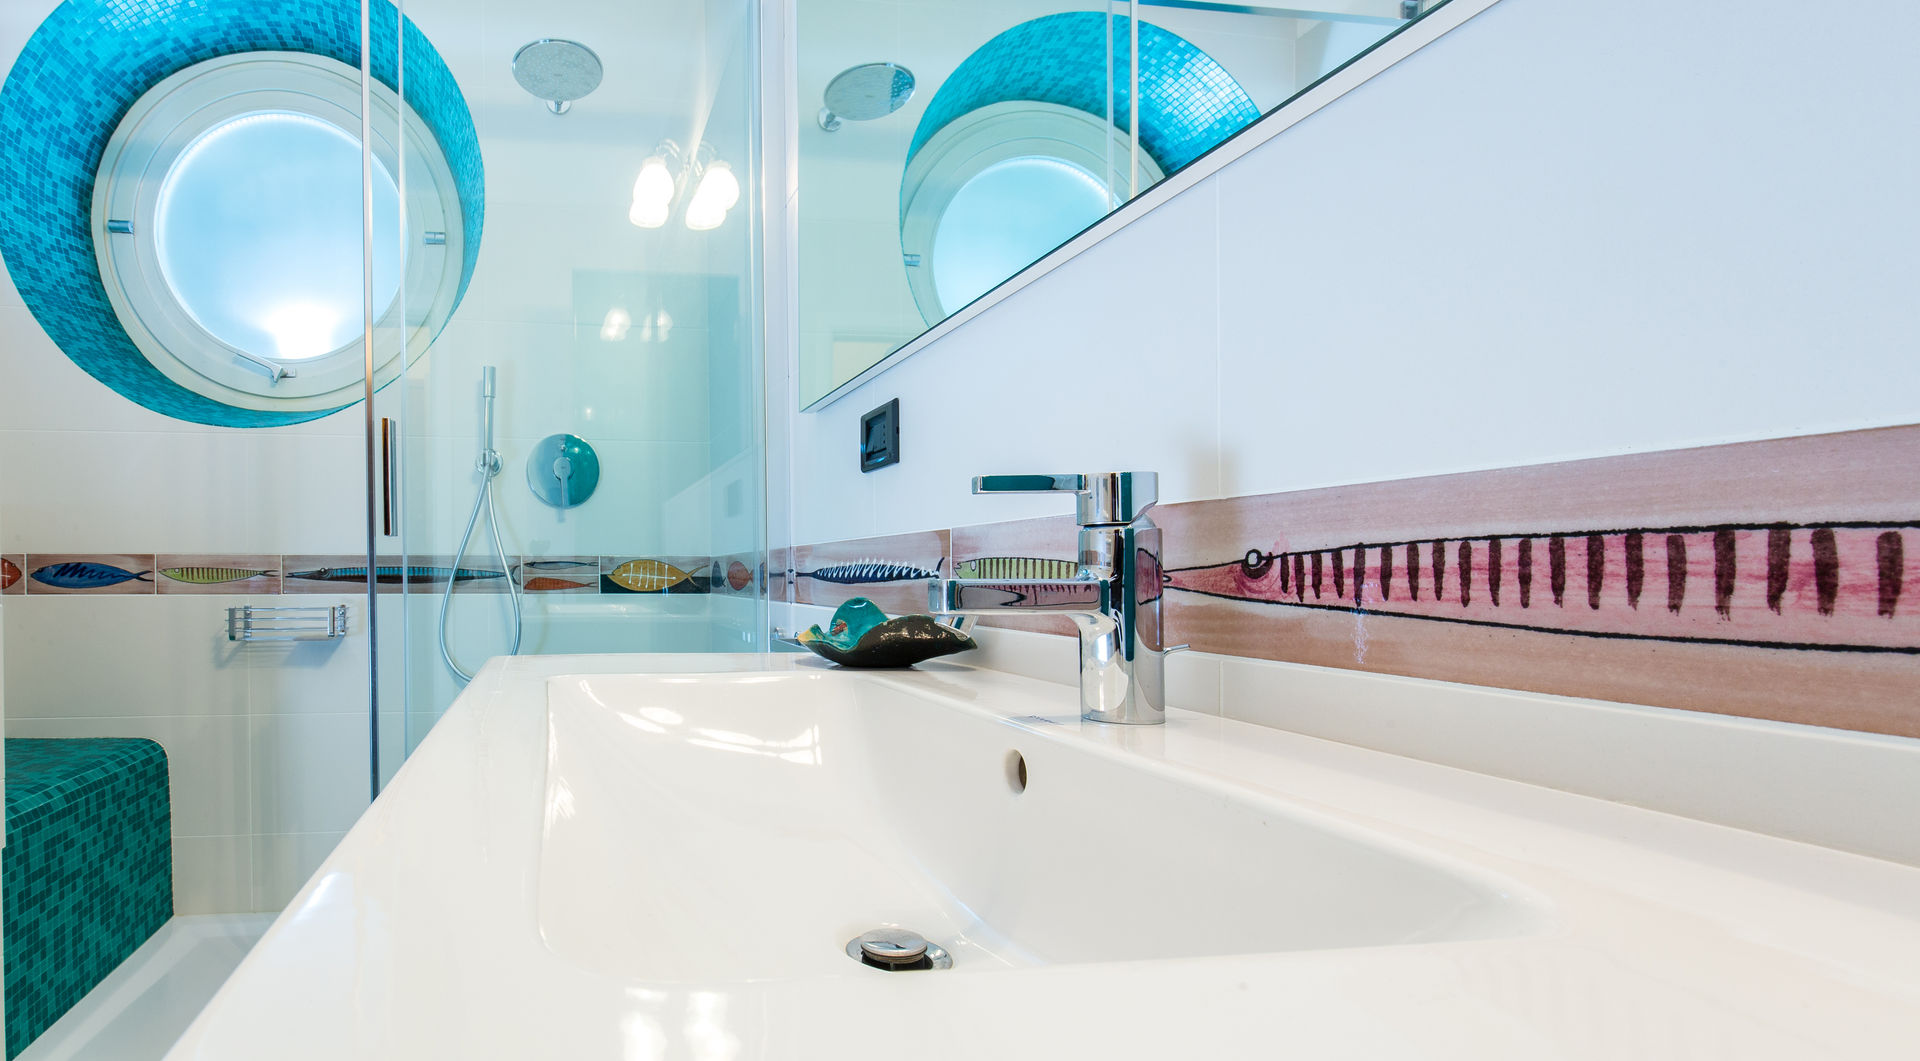 Bagno tropicale ADIdesign* studio Bagno moderno Ceramica Interior,design bagno,bagno,arredo bagno,lavabo bagno,specchio bagno,pavimento del bagno,gres,greca